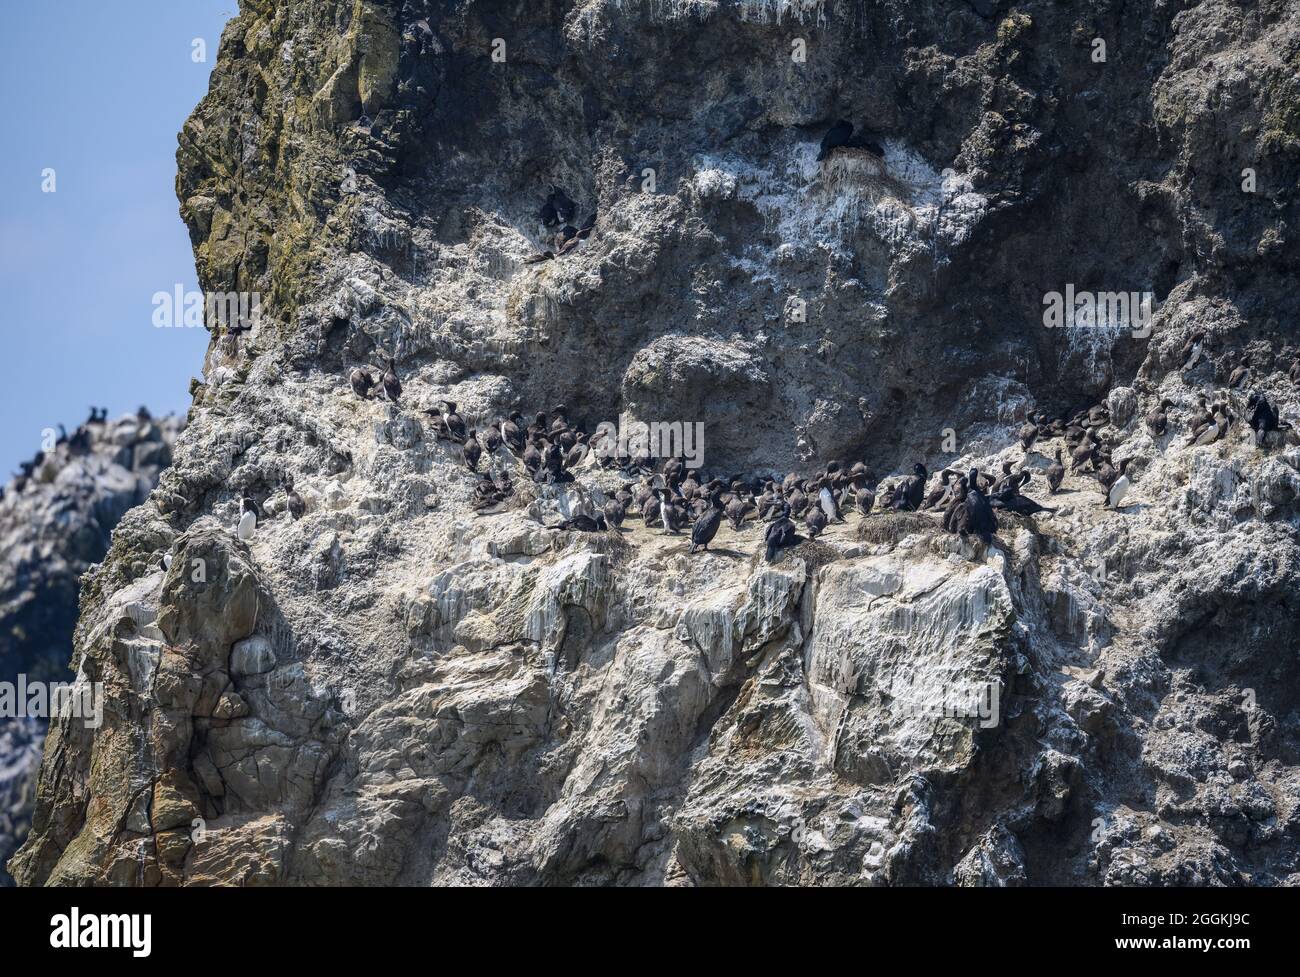 Aves marinas colonizan rocas en la costa de Oregon, Estados Unidos. Foto de stock